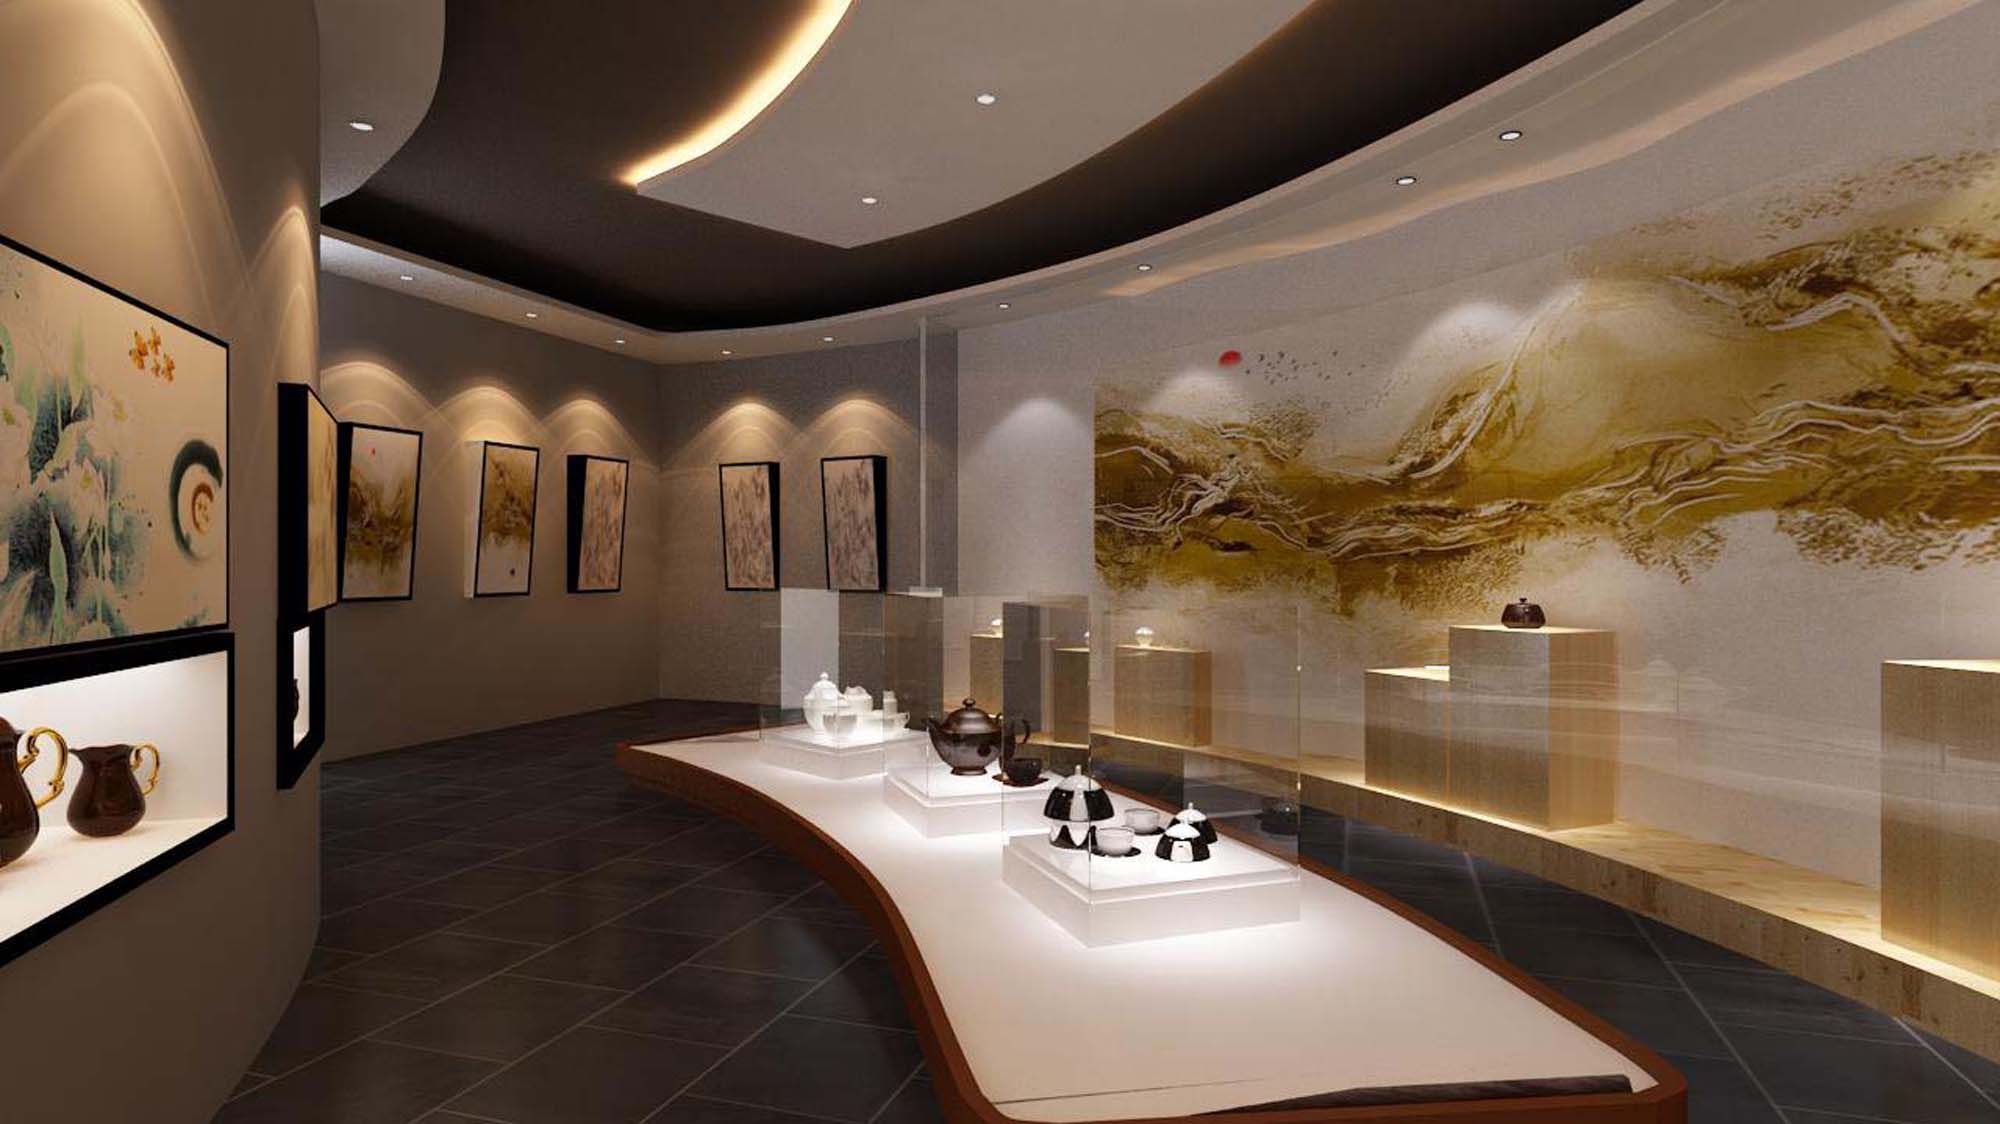 陶瓷展览馆空间设计图片